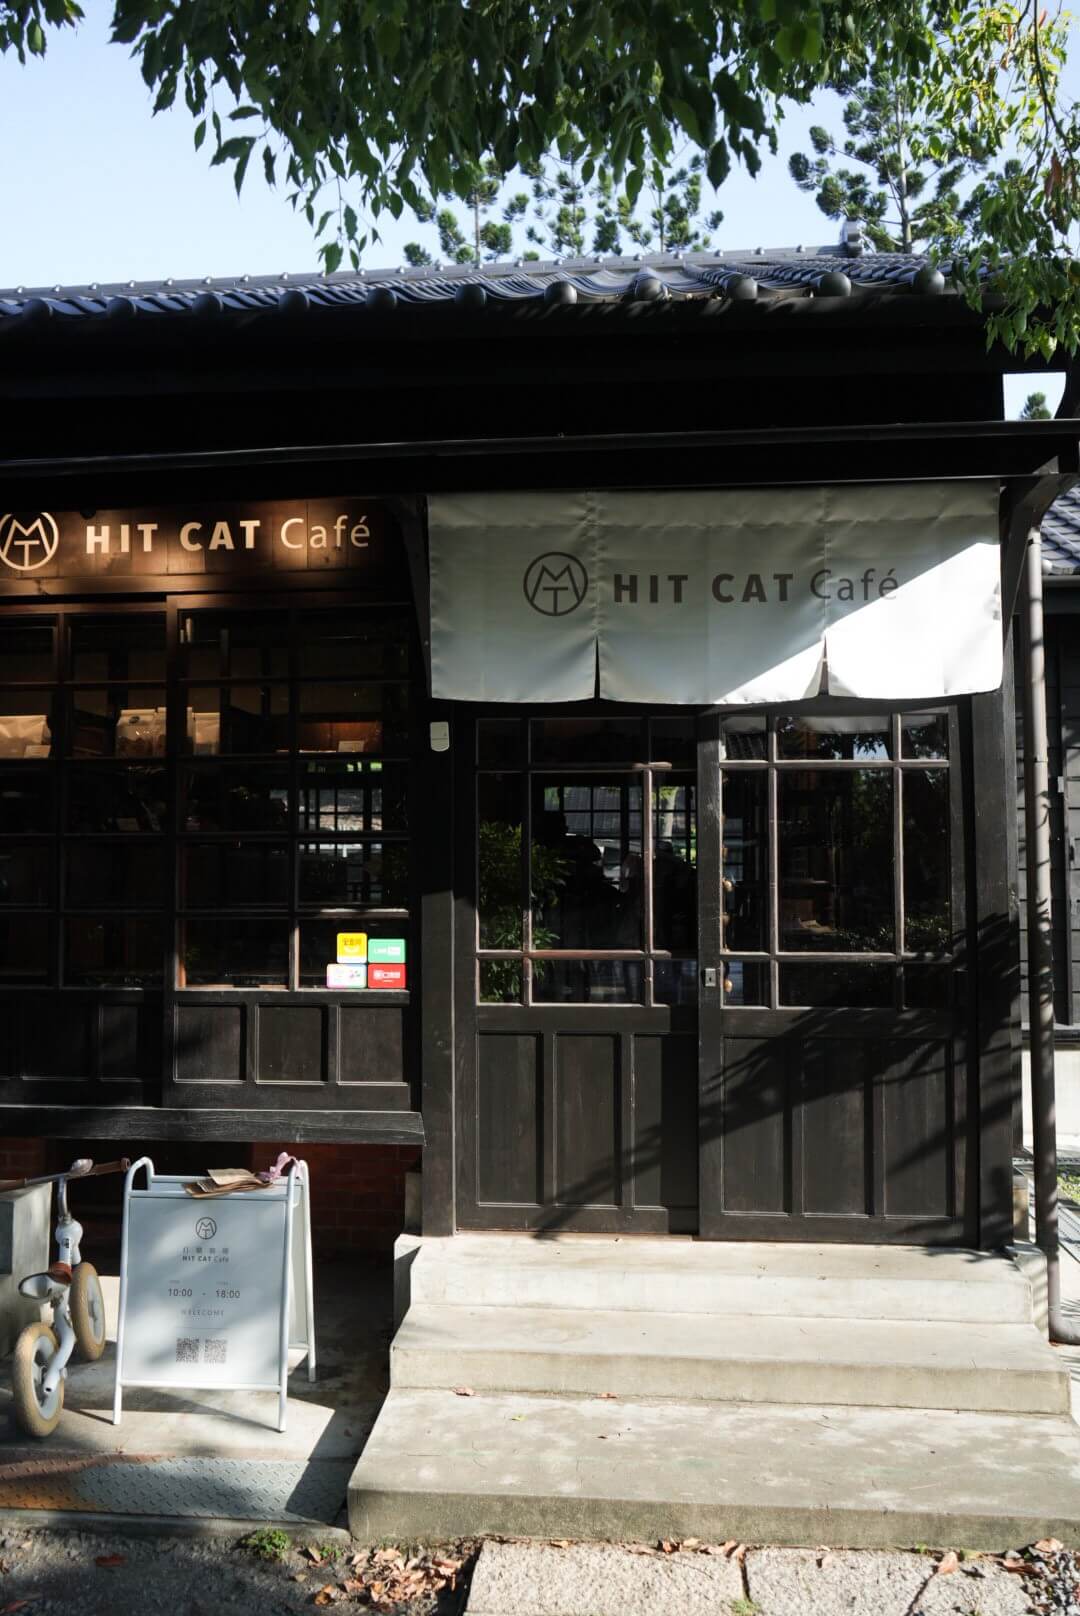 嘉義新開幕【打貓咖啡 Hit Cat Café 】檜意森活村裡的咖啡館